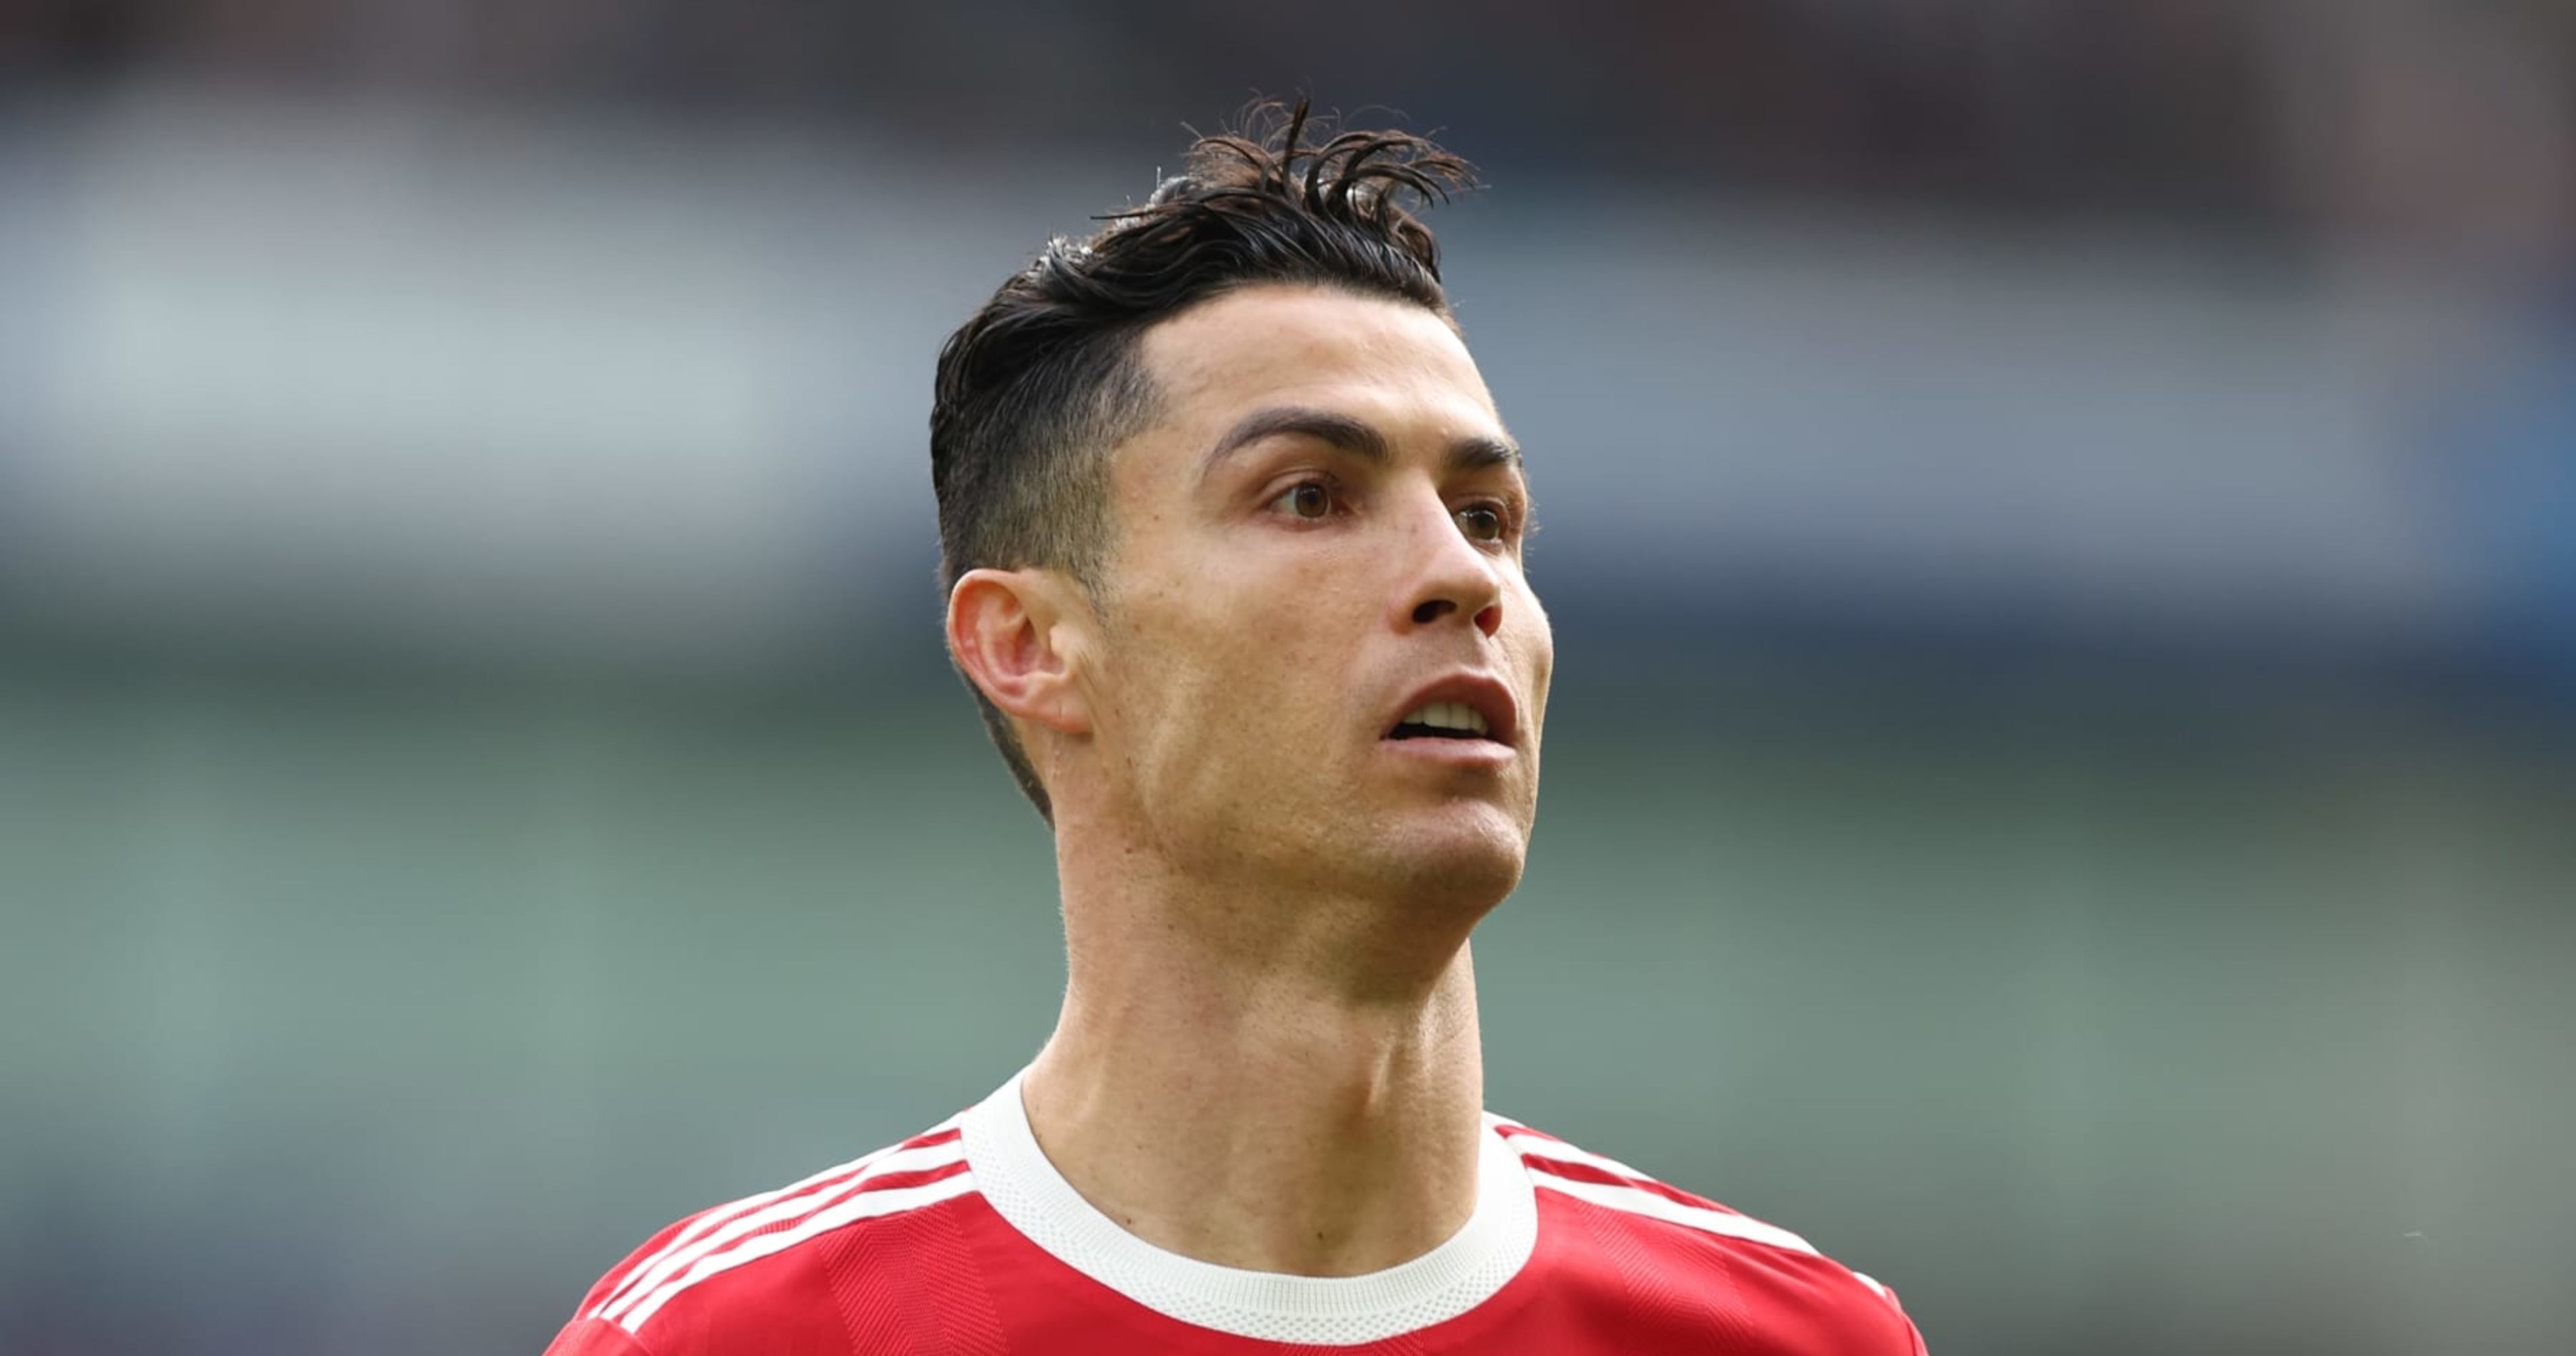 PICS Cristiano Ronaldos New Haircut See His Sexy Shaved Look At Euro  2016  Hollywood Life